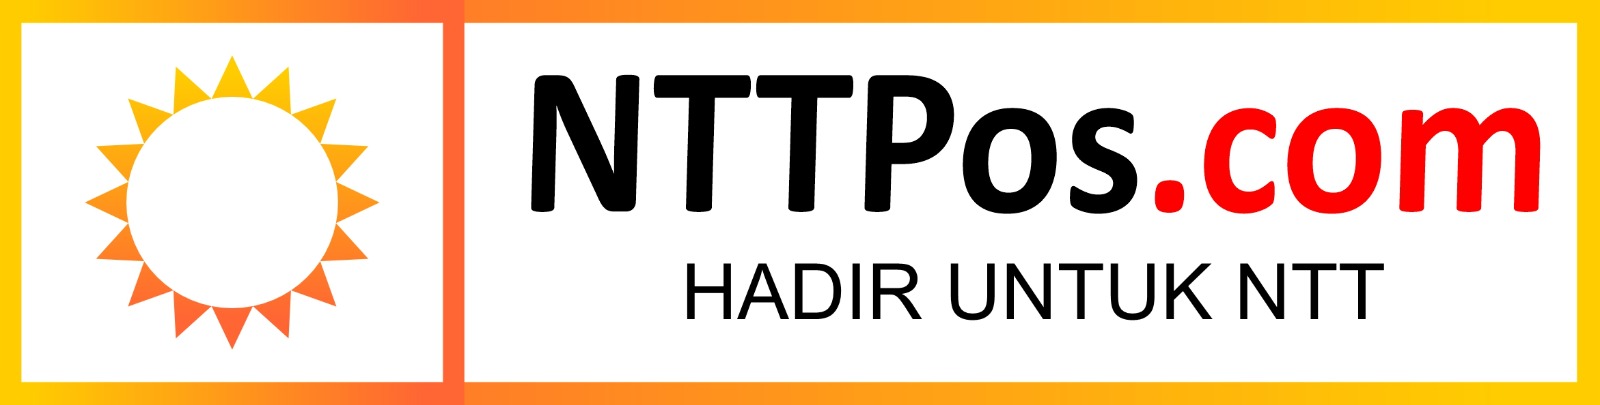 NTTPos.com